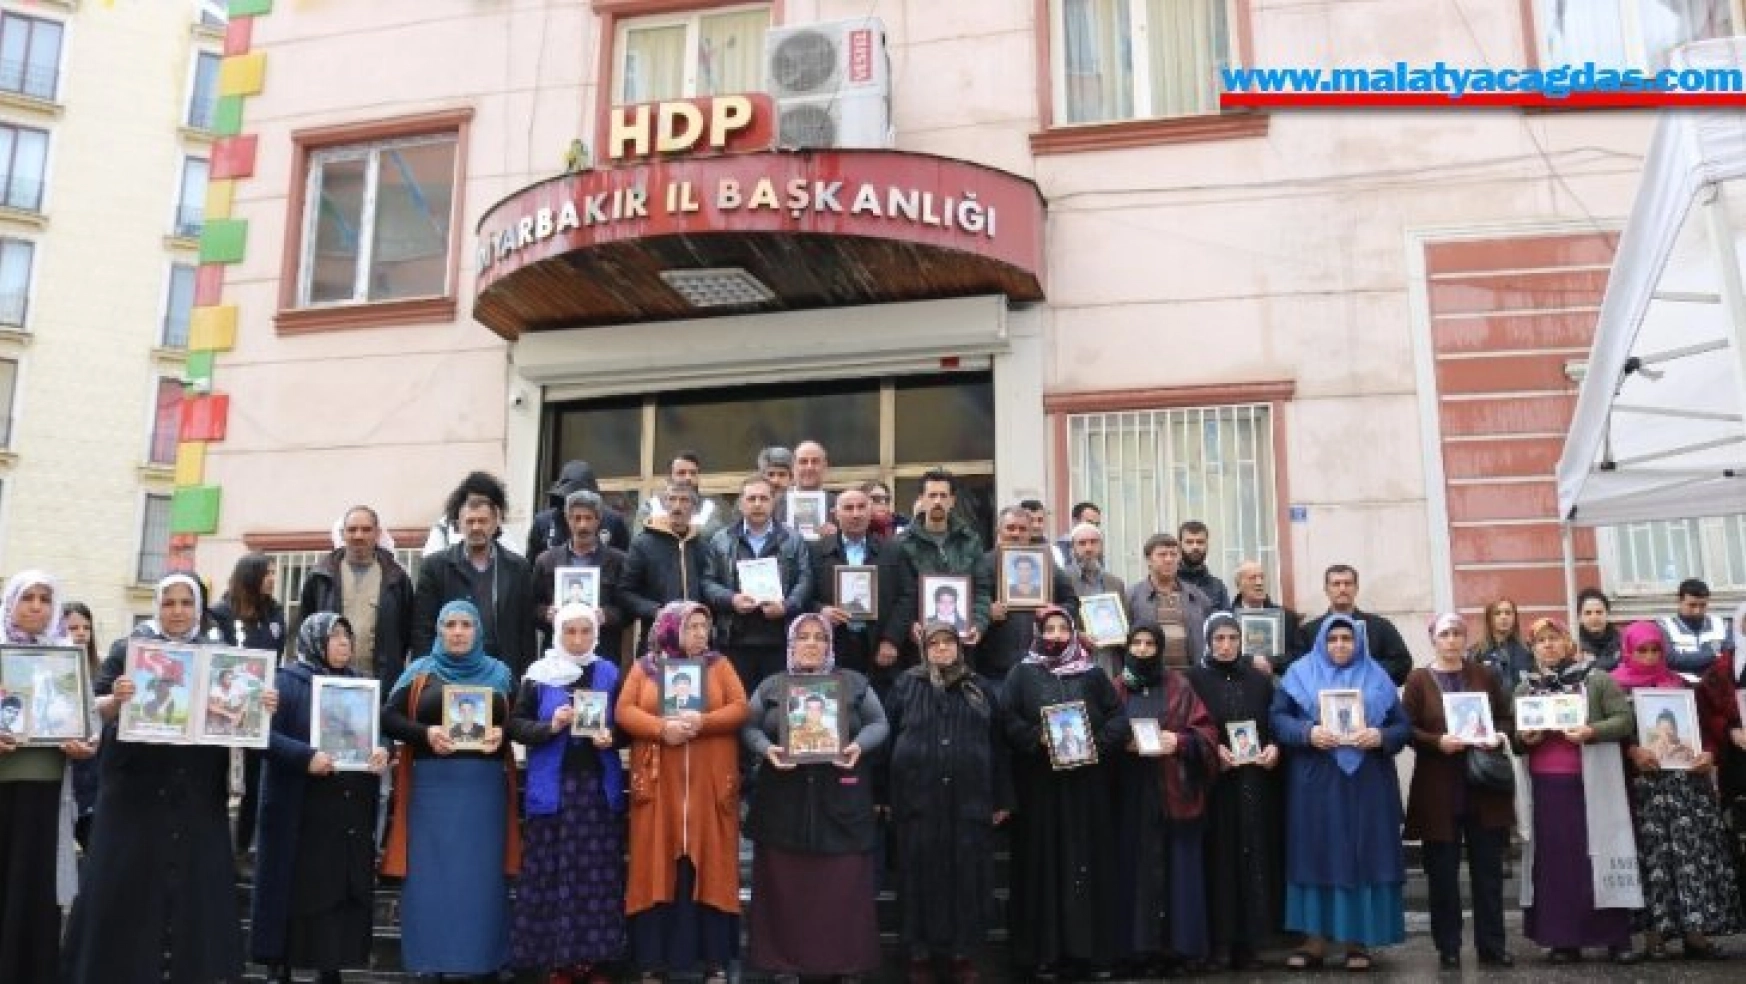 HDP önündeki ailelerin evlat nöbeti 197'nci gününde